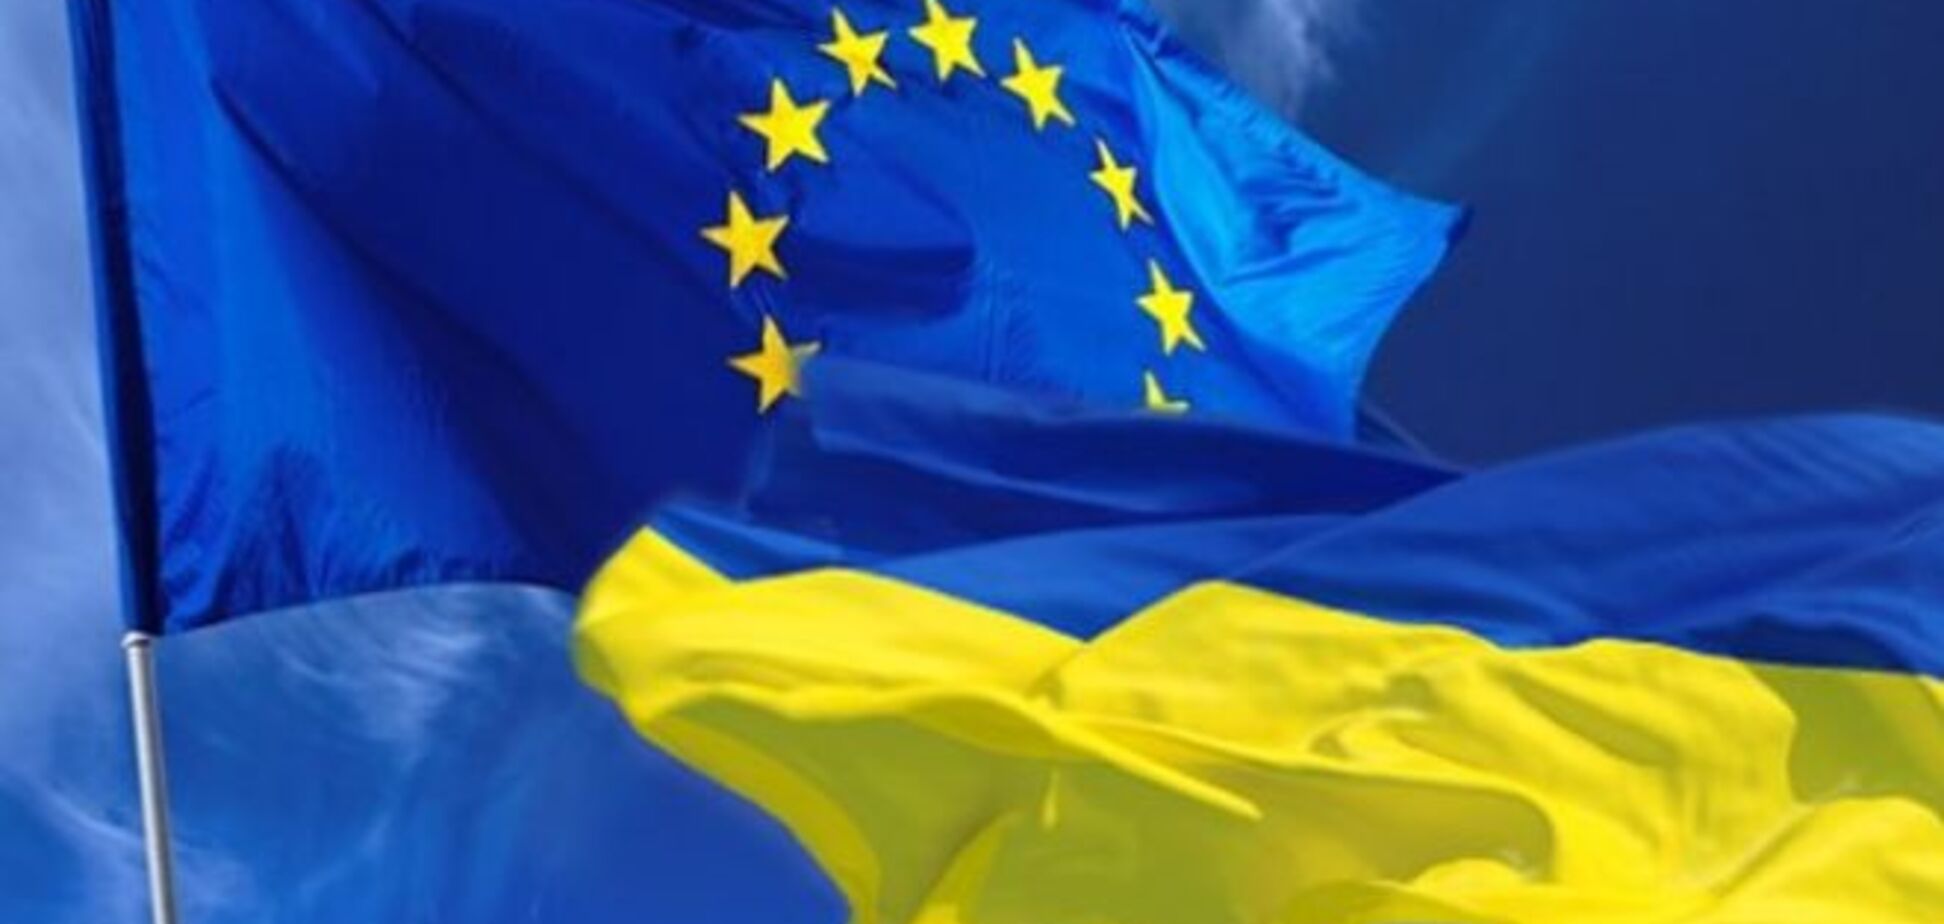 Перед саммитом министры ЕС обсудят торговые дела с Украиной